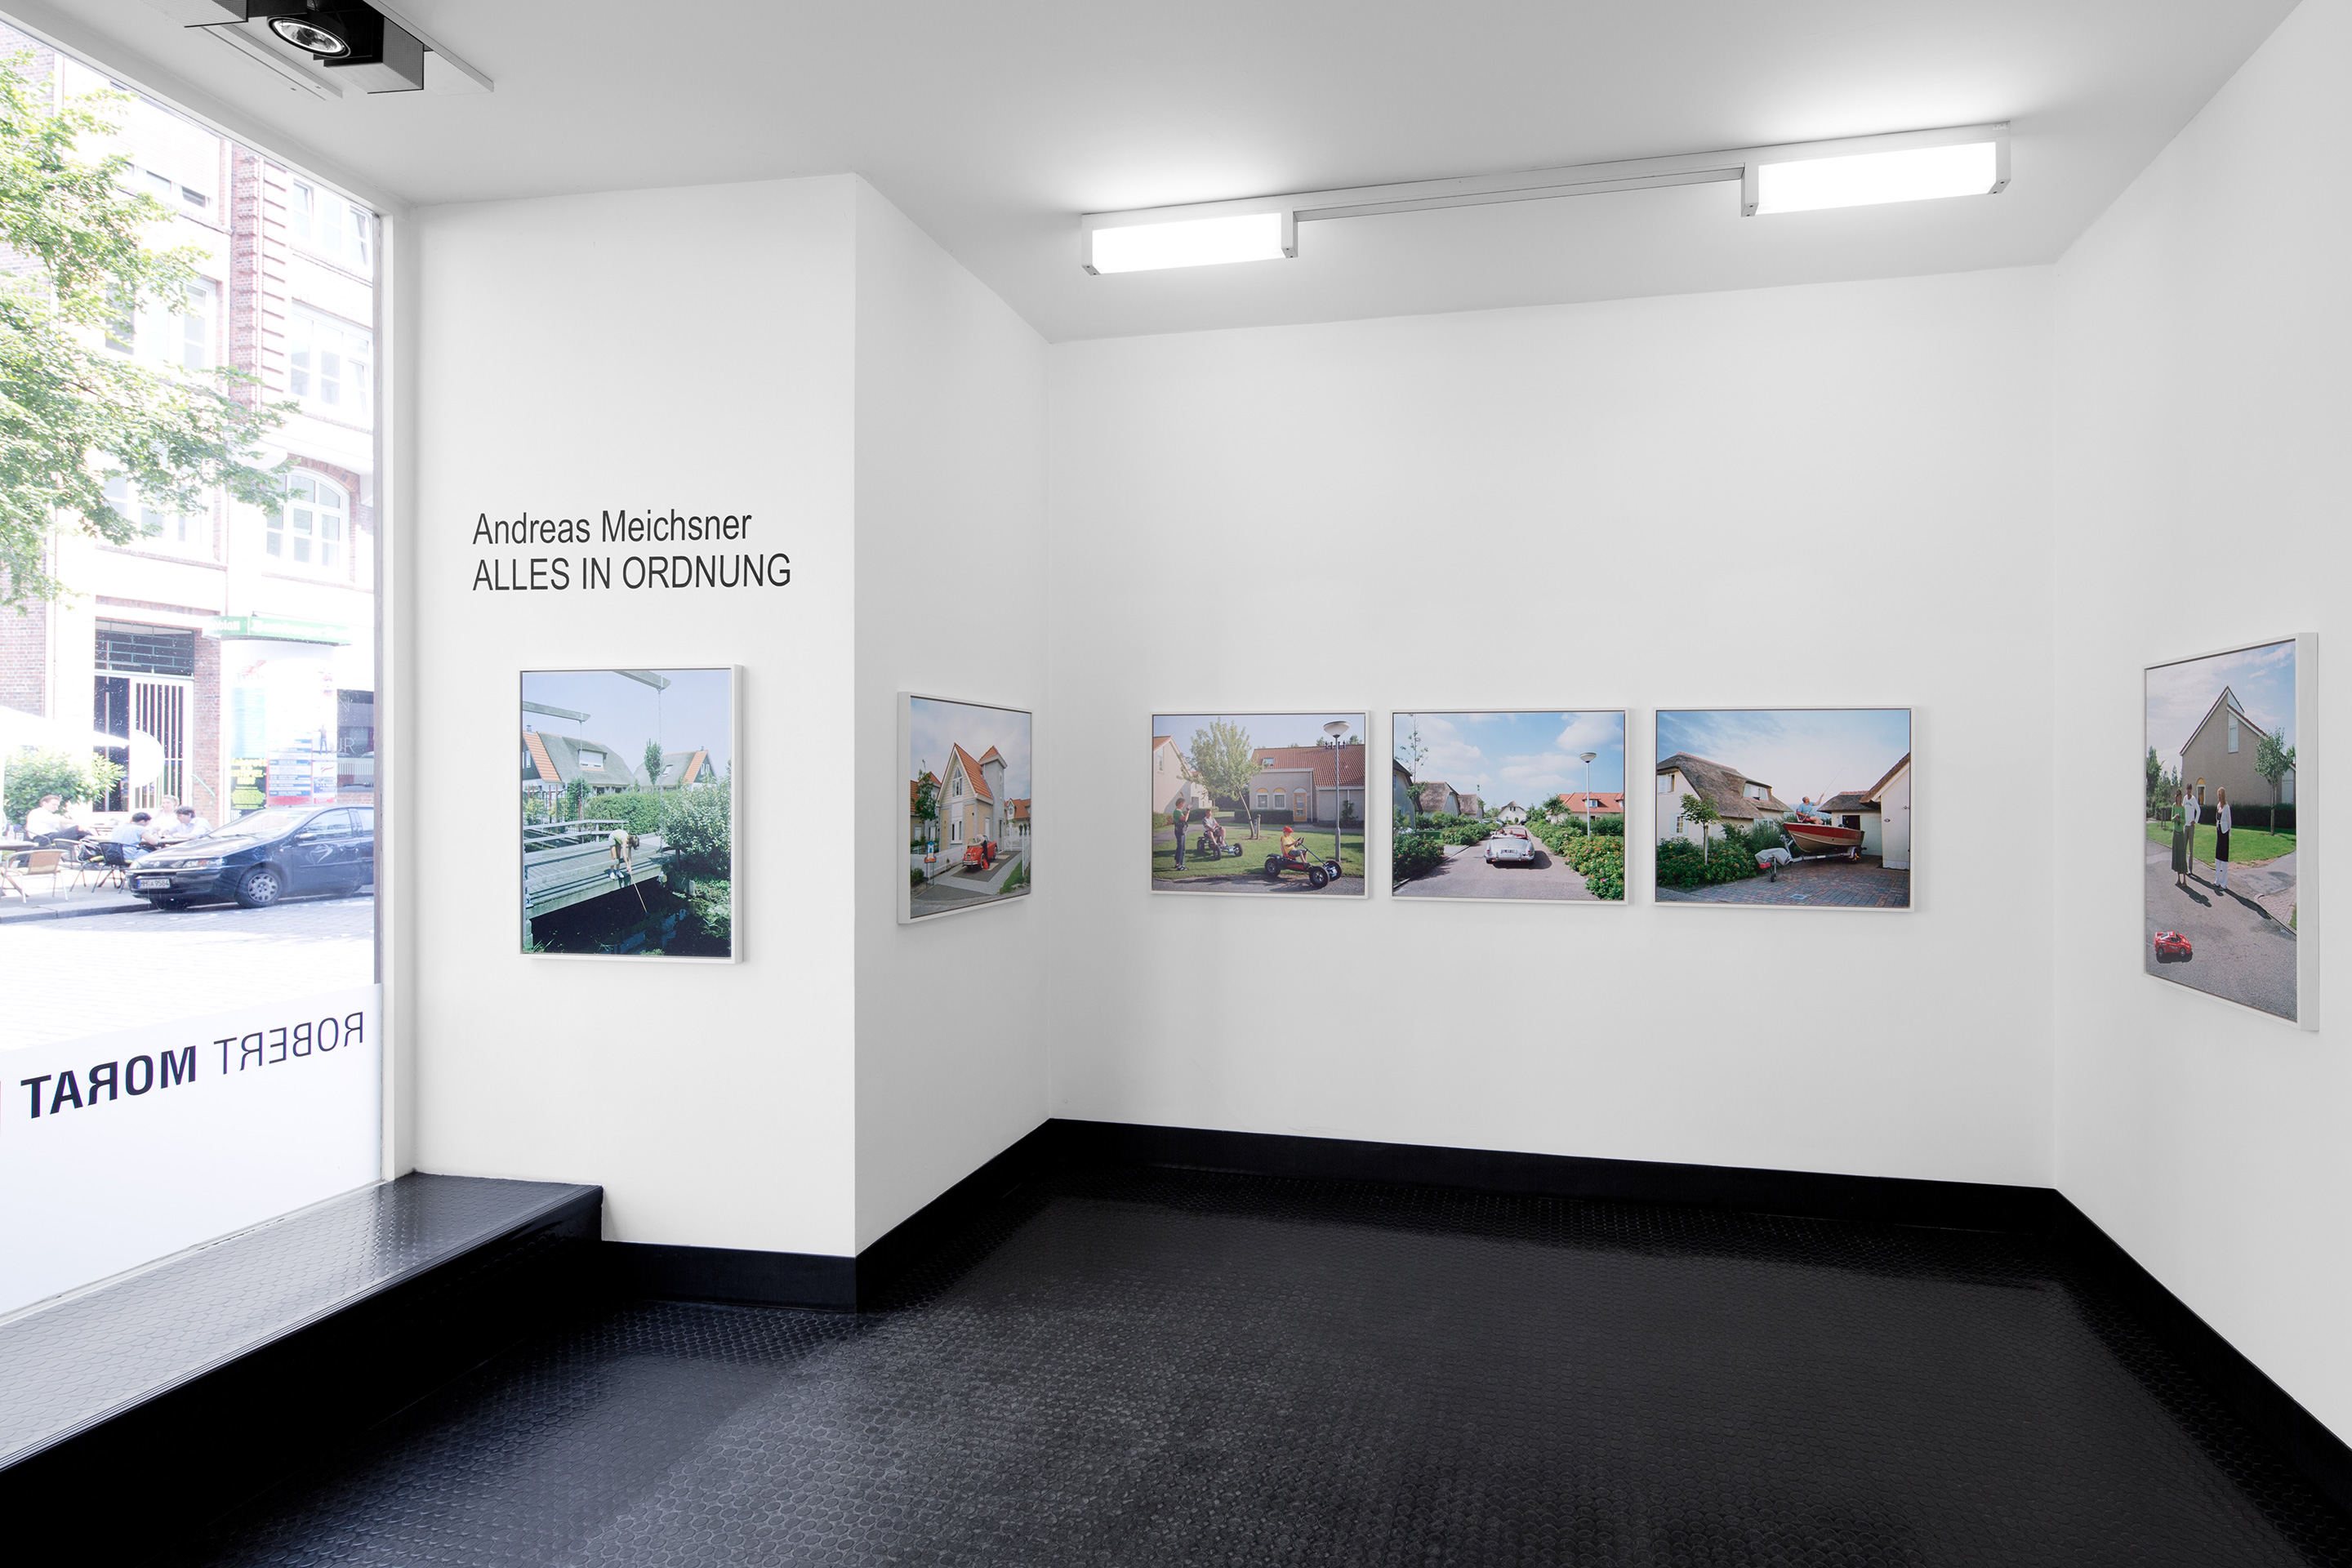 Andreas Meichsner at Robert Morat Gallery Hamburg